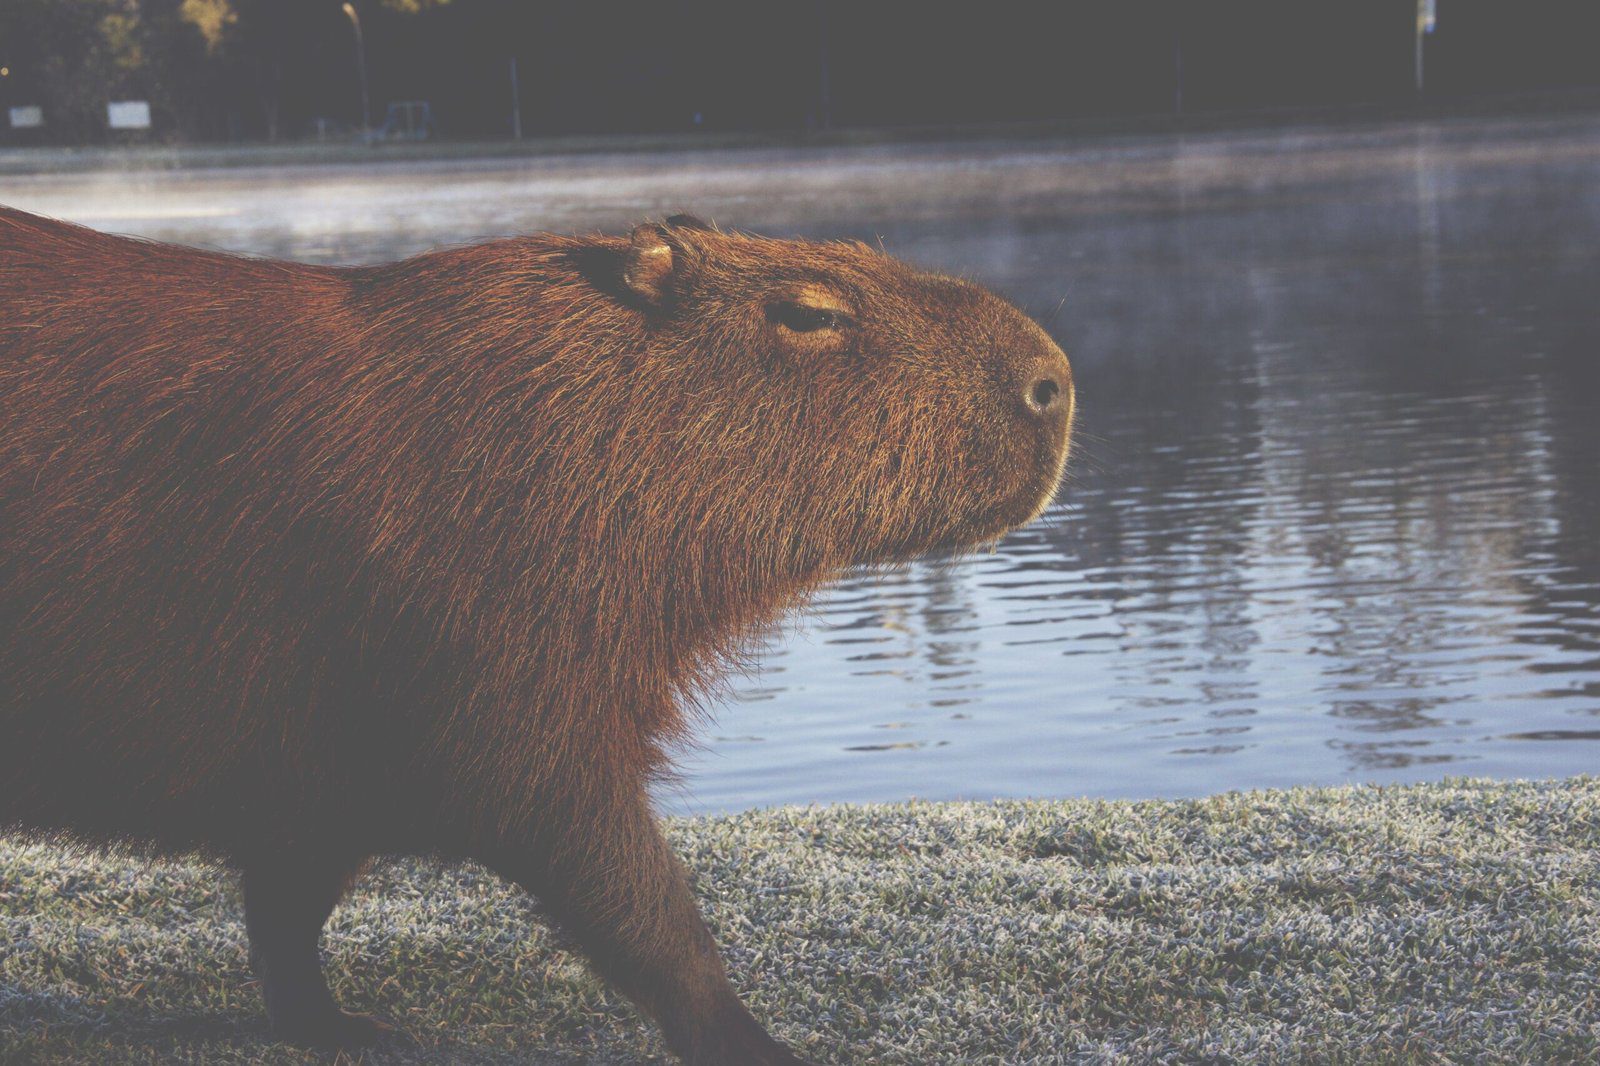 Cute Capybara Amigurumi Free Pattern